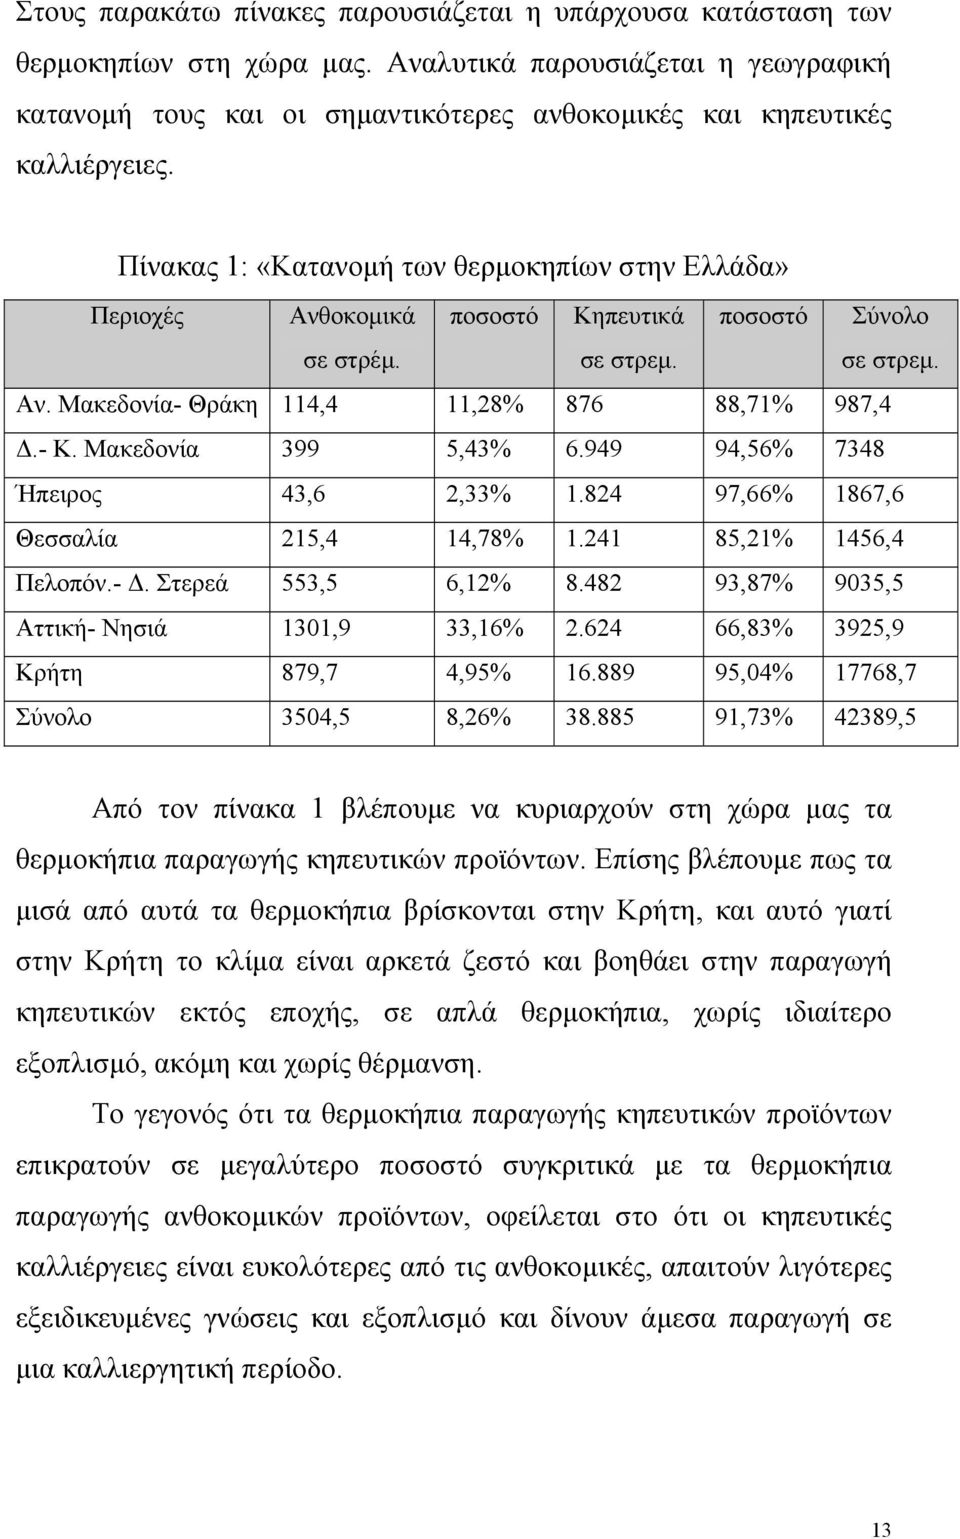 ποσοστό Κηπευτικά σε στρεµ. ποσοστό Σύνολο σε στρεµ. Αν. Μακεδονία- Θράκη 114,4 11,28% 876 88,71% 987,4.- Κ. Μακεδονία 399 5,43% 6.949 94,56% 7348 Ήπειρος 43,6 2,33% 1.